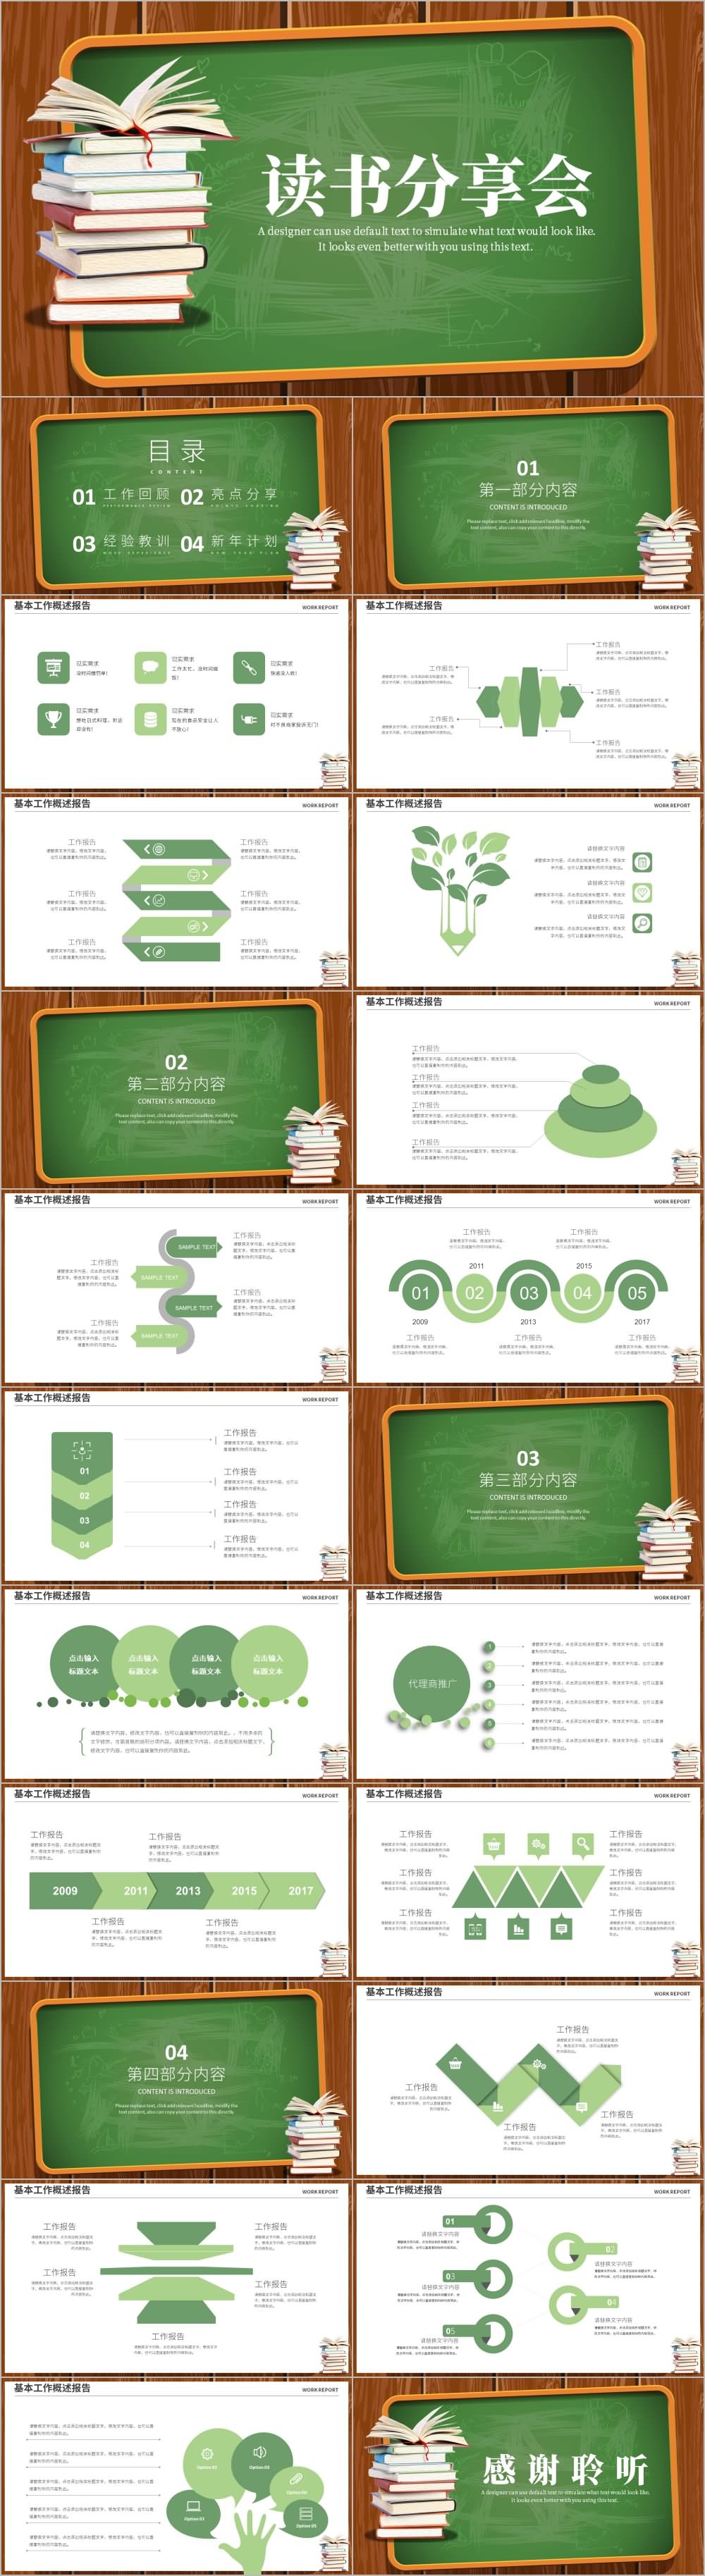 绿色黑板读书分享会教育培训PPT模板